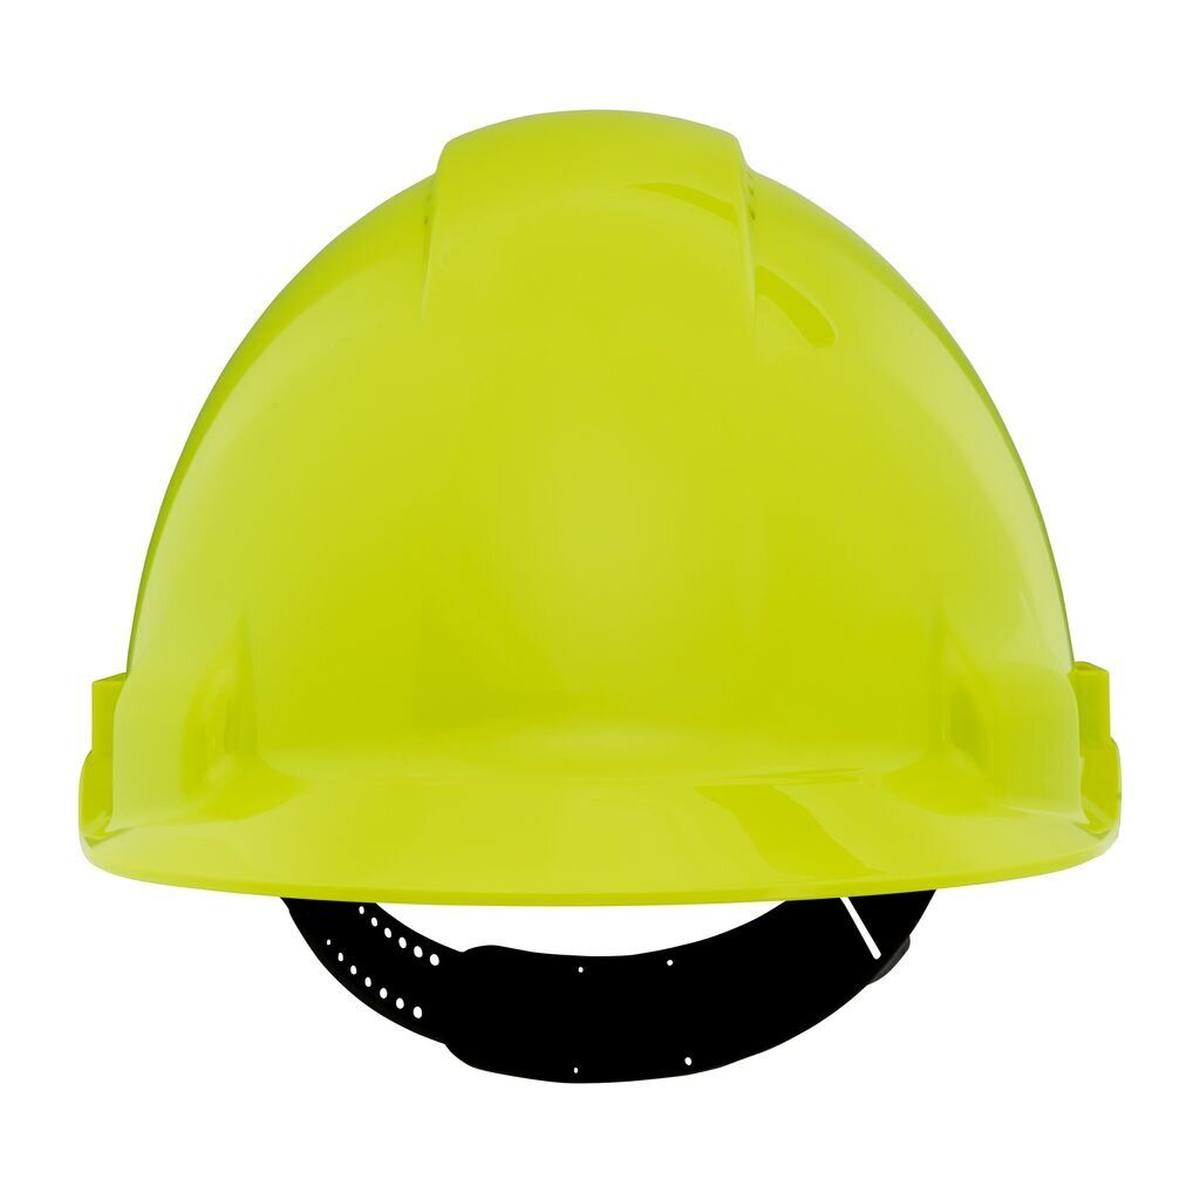 3M G3000 casque de protection G30CUV en vert fluo, ventilé, avec uvicator, pinlock et bande de soudure en plastique